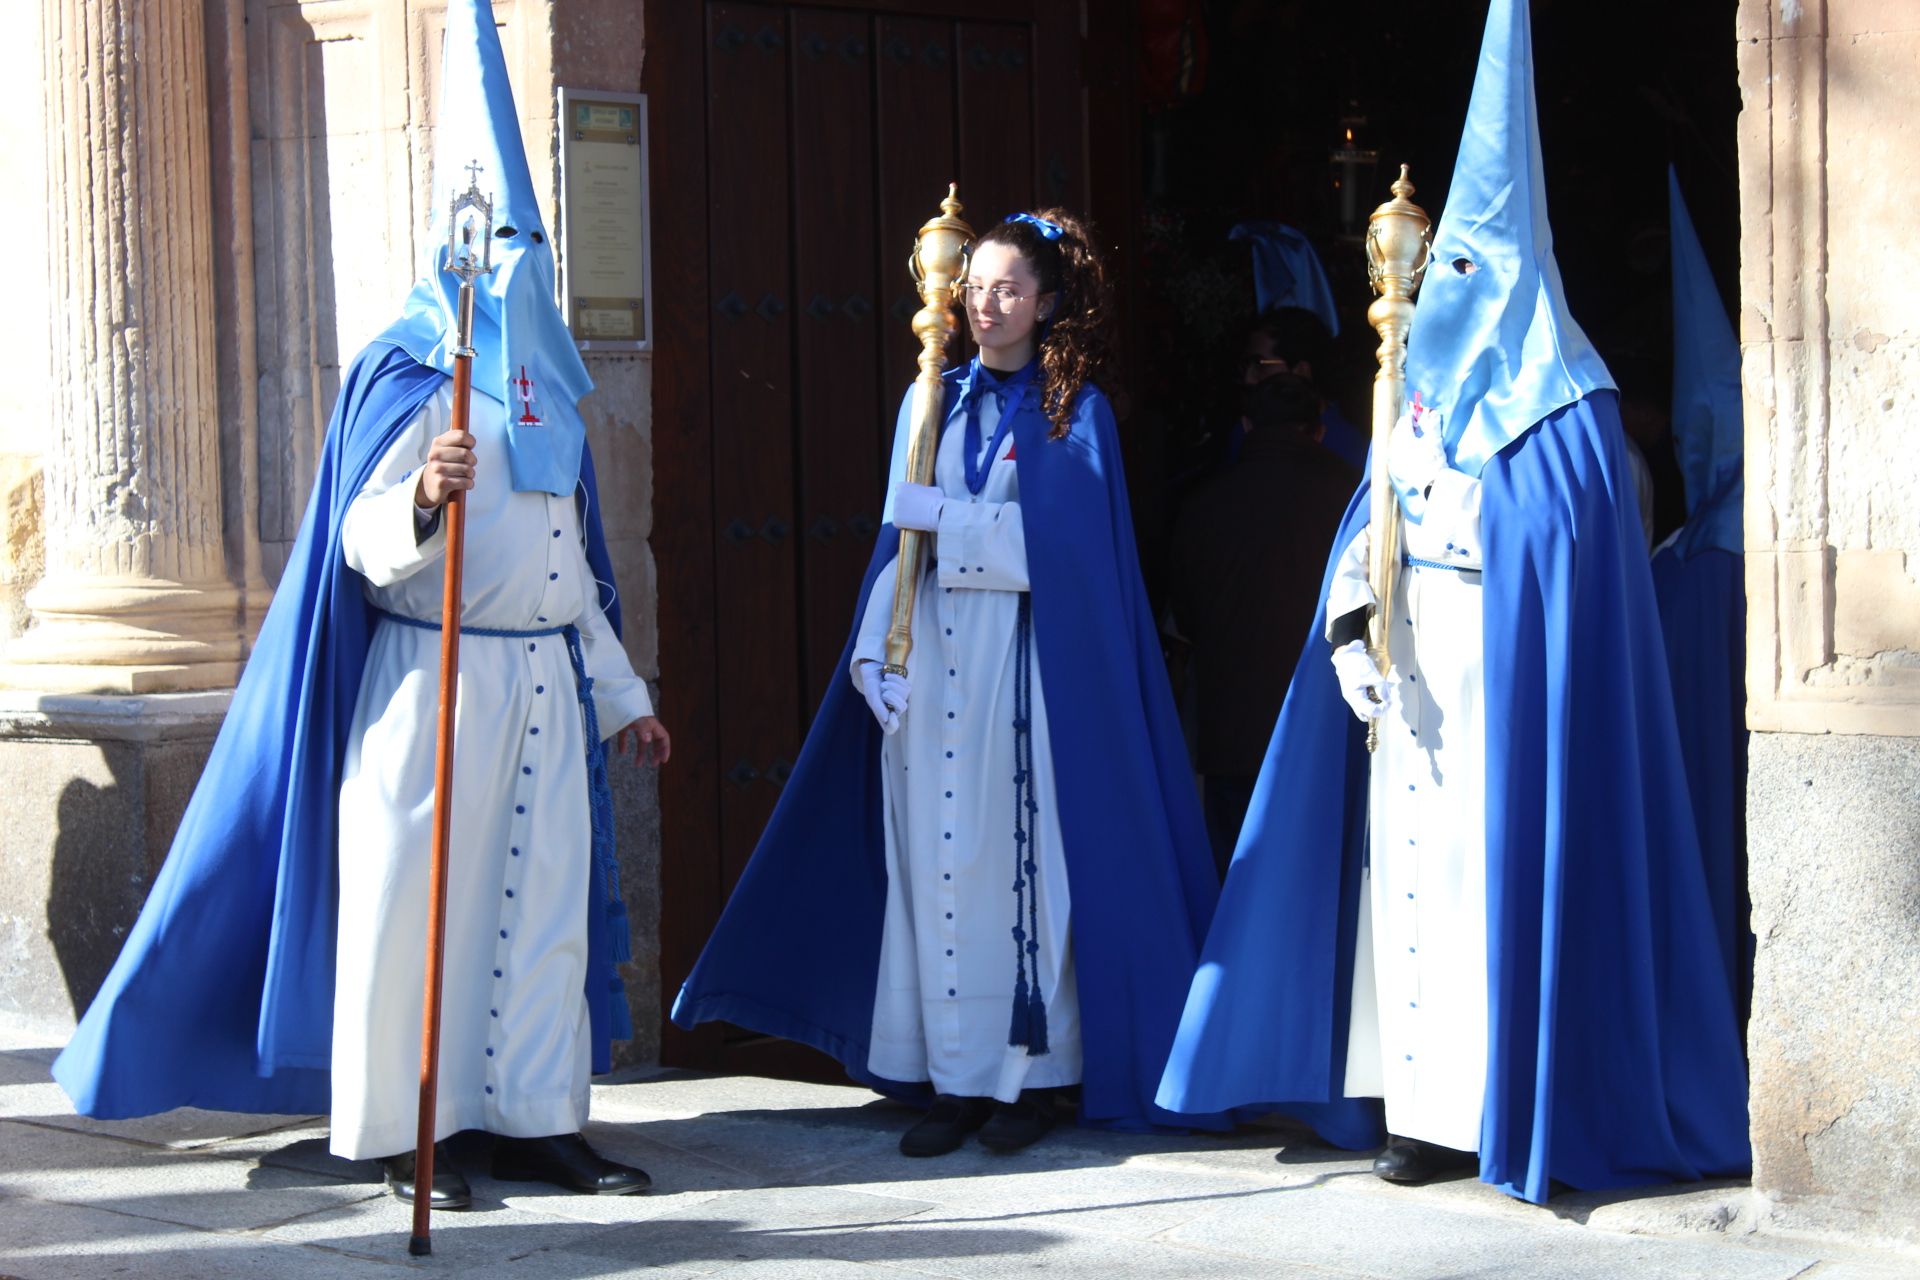 Inicio de la procesión del Santo Entierro, en Salamanca. Foto Carlos H.G